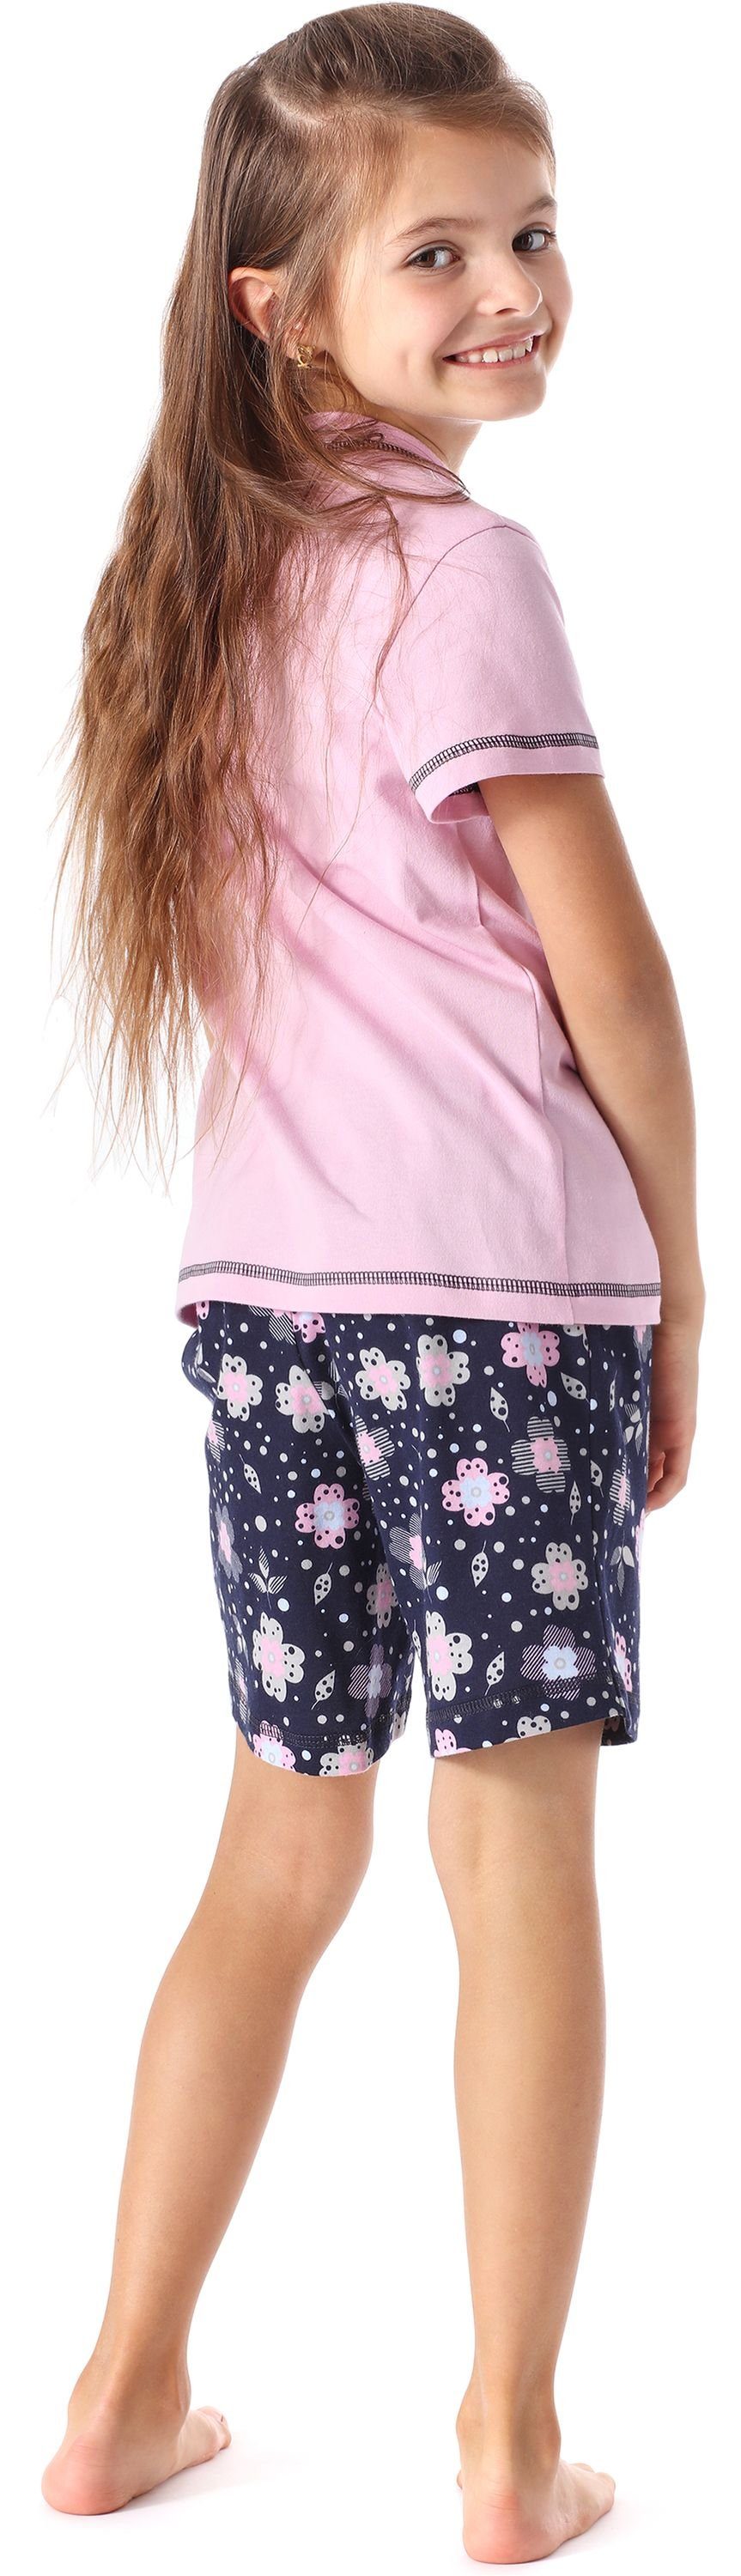 Baumwolle MS10-292 Style Set Rosa/Blumen Schlafanzüge Schlafanzug aus Kurz Mädchen Merry Pyjama